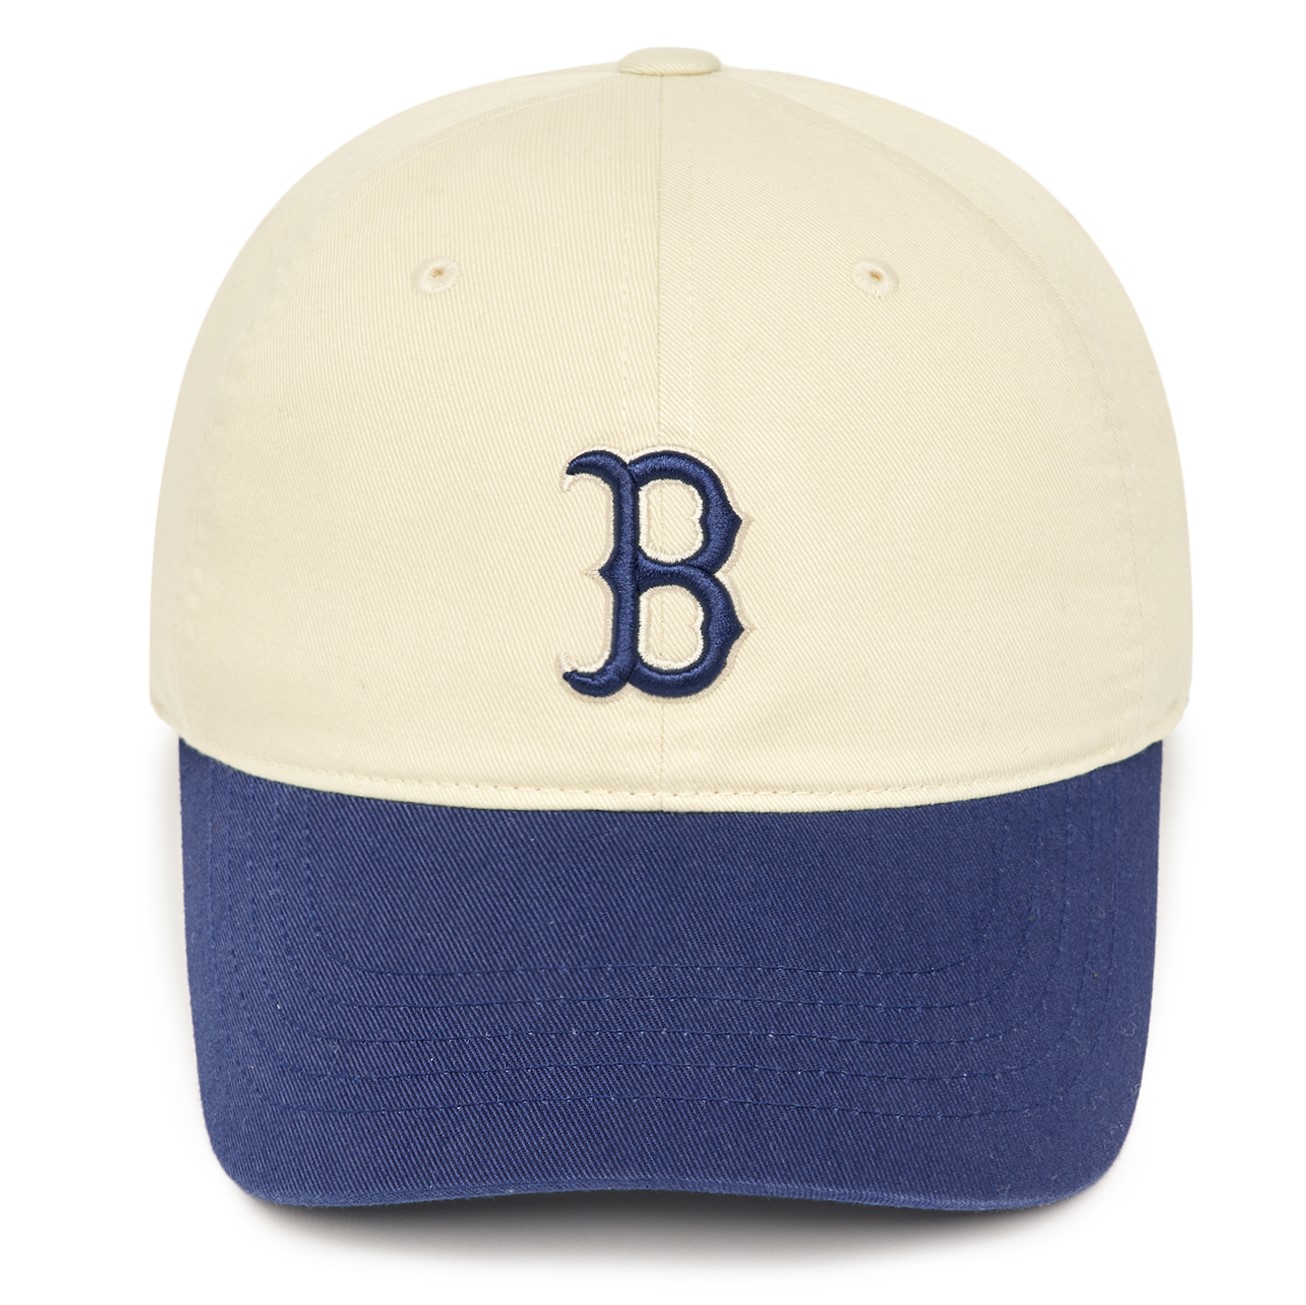 NÓN CAP MLB B BOSTON RED SOX 3ACP3303N-43NYS MÀU XANH TRẮNG 2